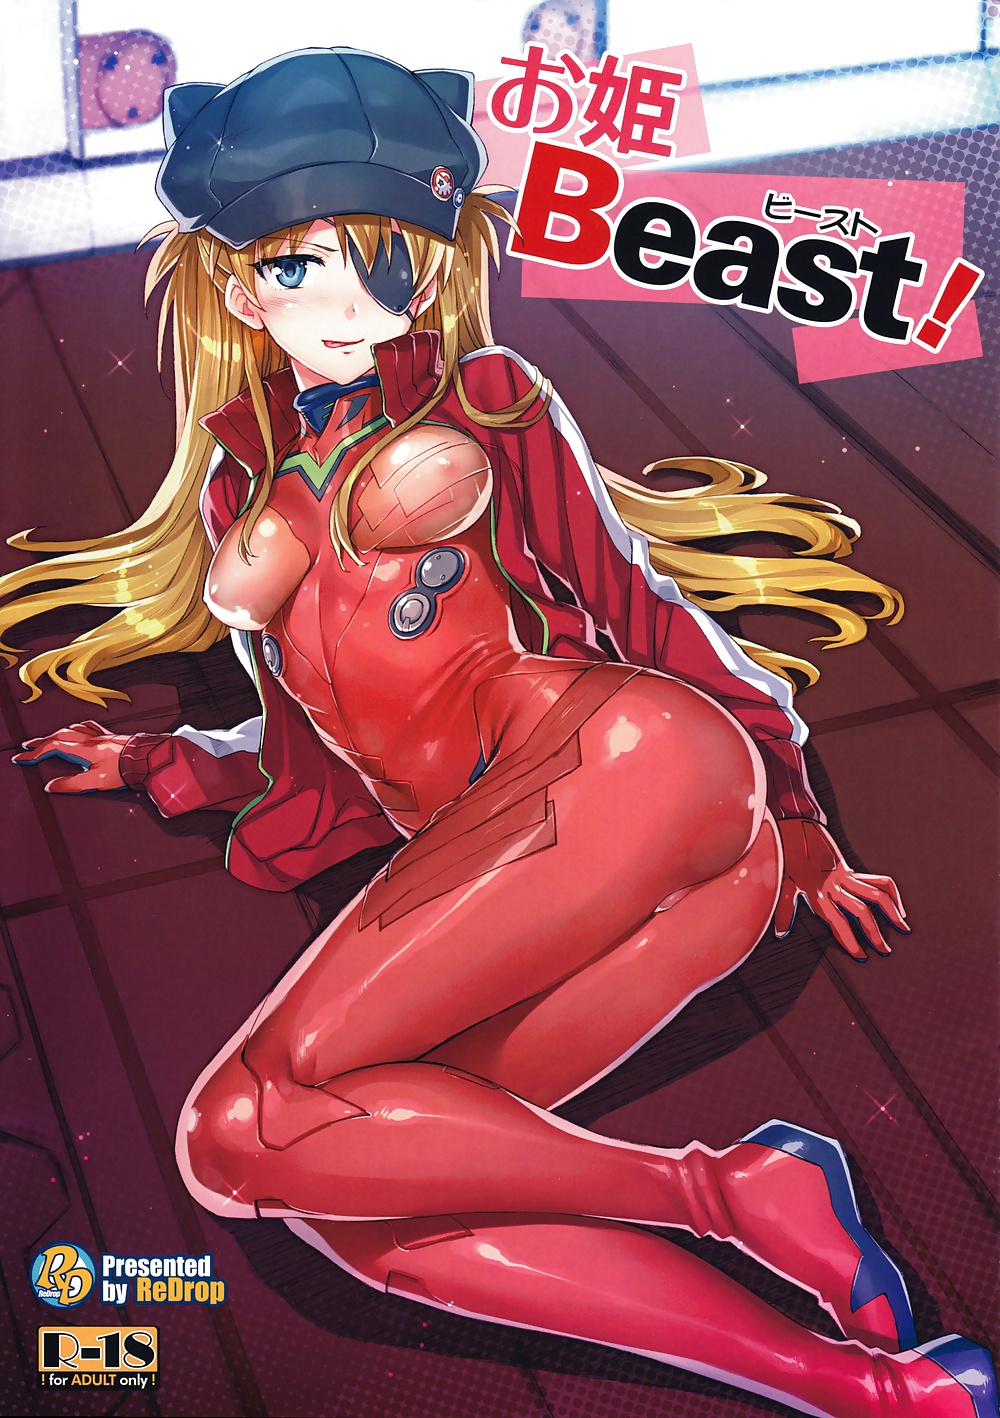 ReDrop - Ohime Beast (Evangelion) #25236713